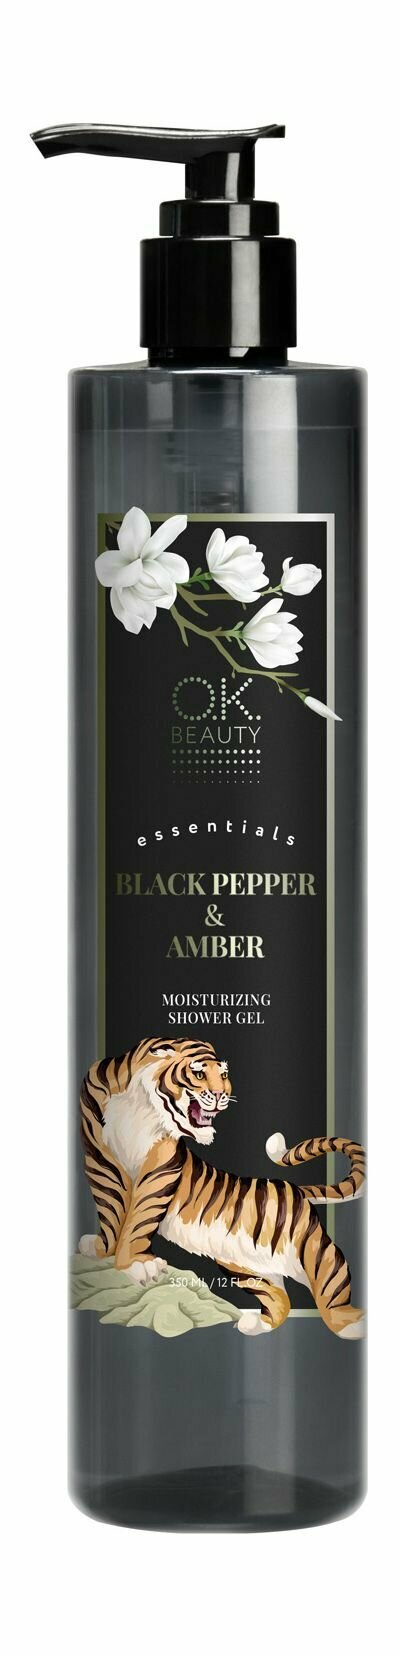 Увлажняющий гель для душа с ароматом черного перца и амбры / O.K.Beauty Essentials Black Pepper&Amber Moisturizing Shower Gel